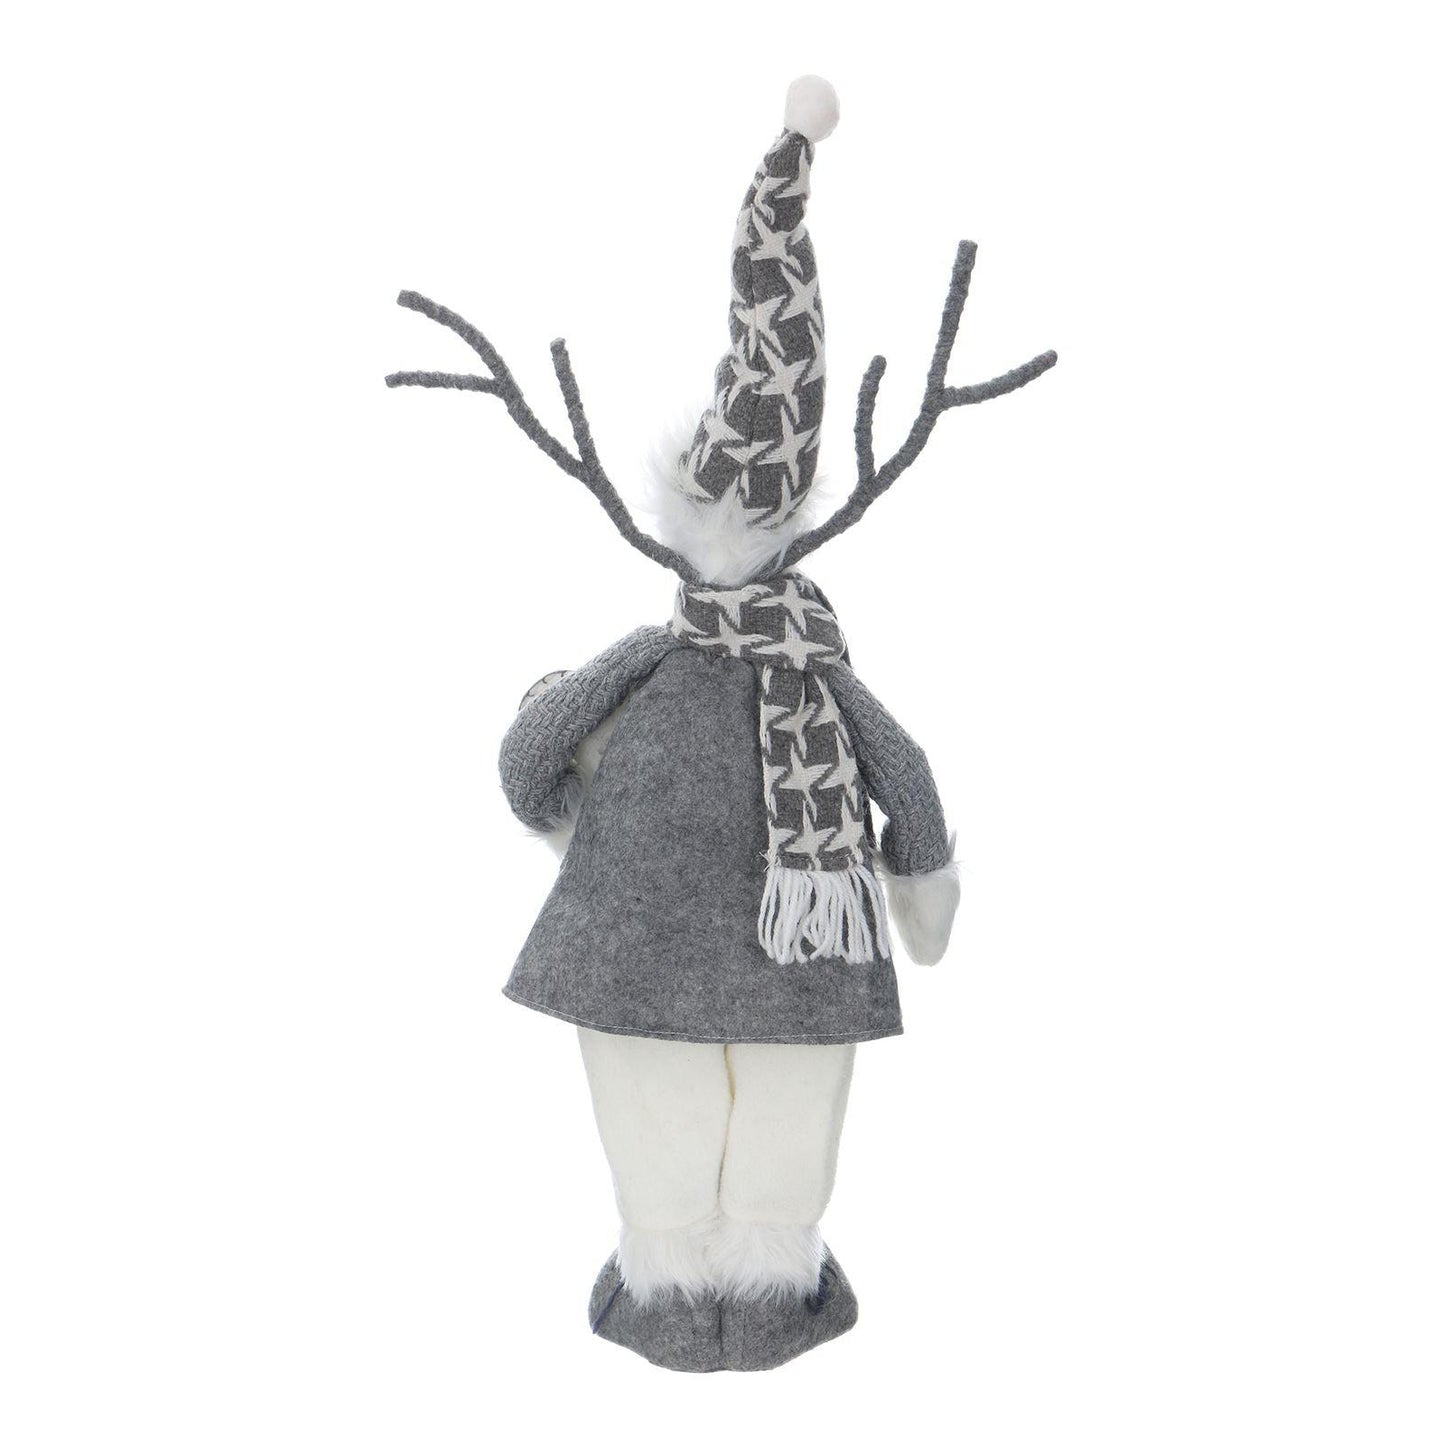 Mr Crimbo 19" Reindeer Figure Christmas Scandi Style Grey White - MrCrimbo.co.uk -XS5739 - Reindeer with Heart -christmas